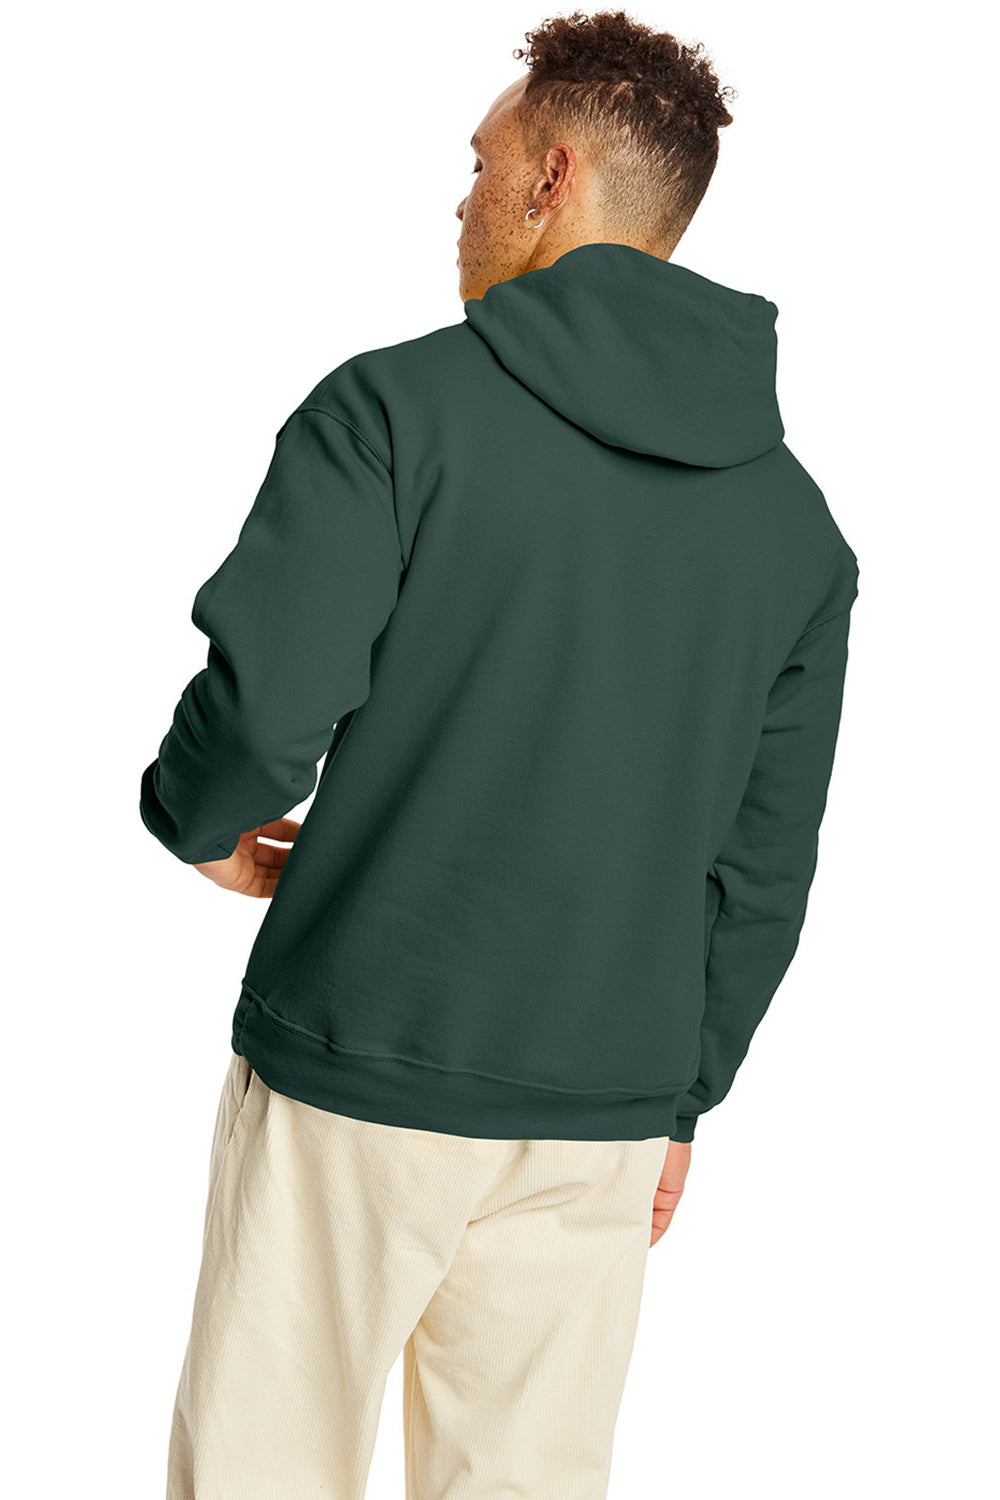 Hanes P170 Mens EcoSmart Print Pro XP Hooded Sweatshirt Hoodie Athletic Dark Green Back